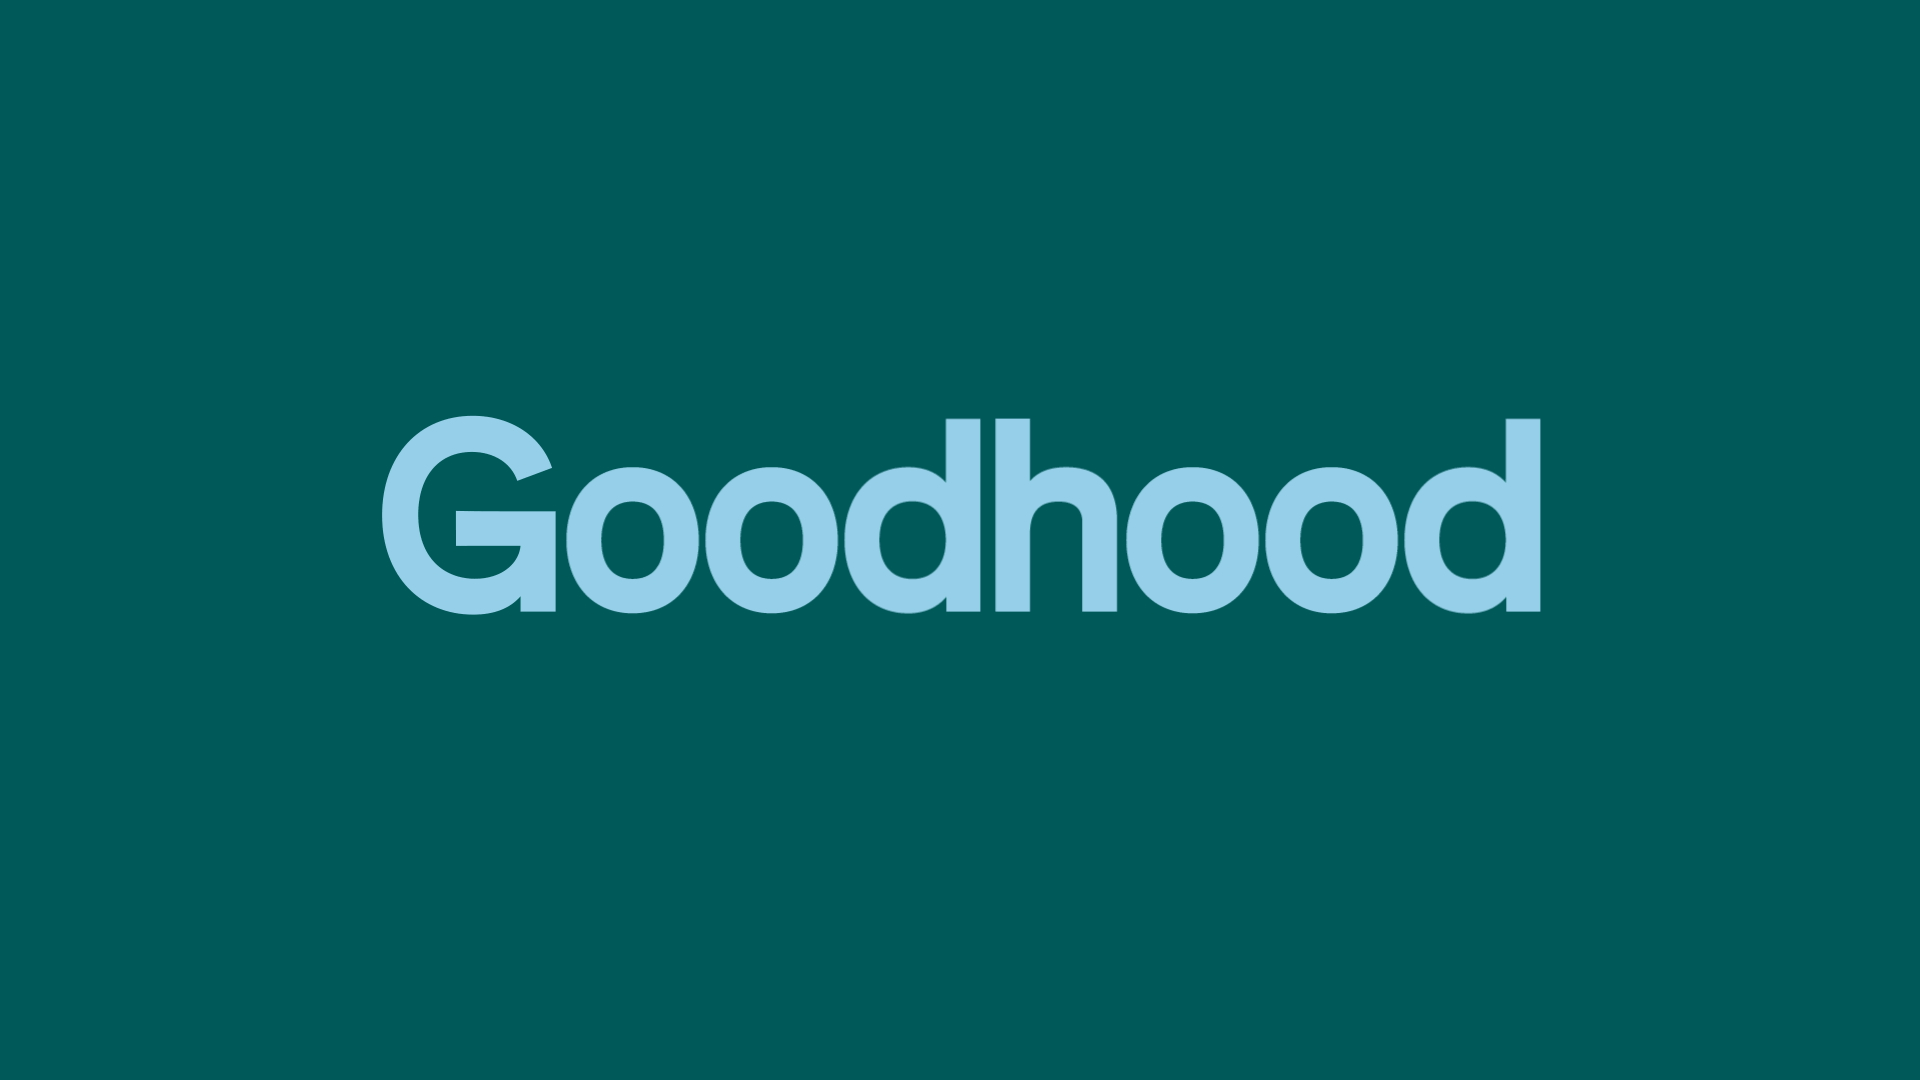 Goodhood-01-Logo-1